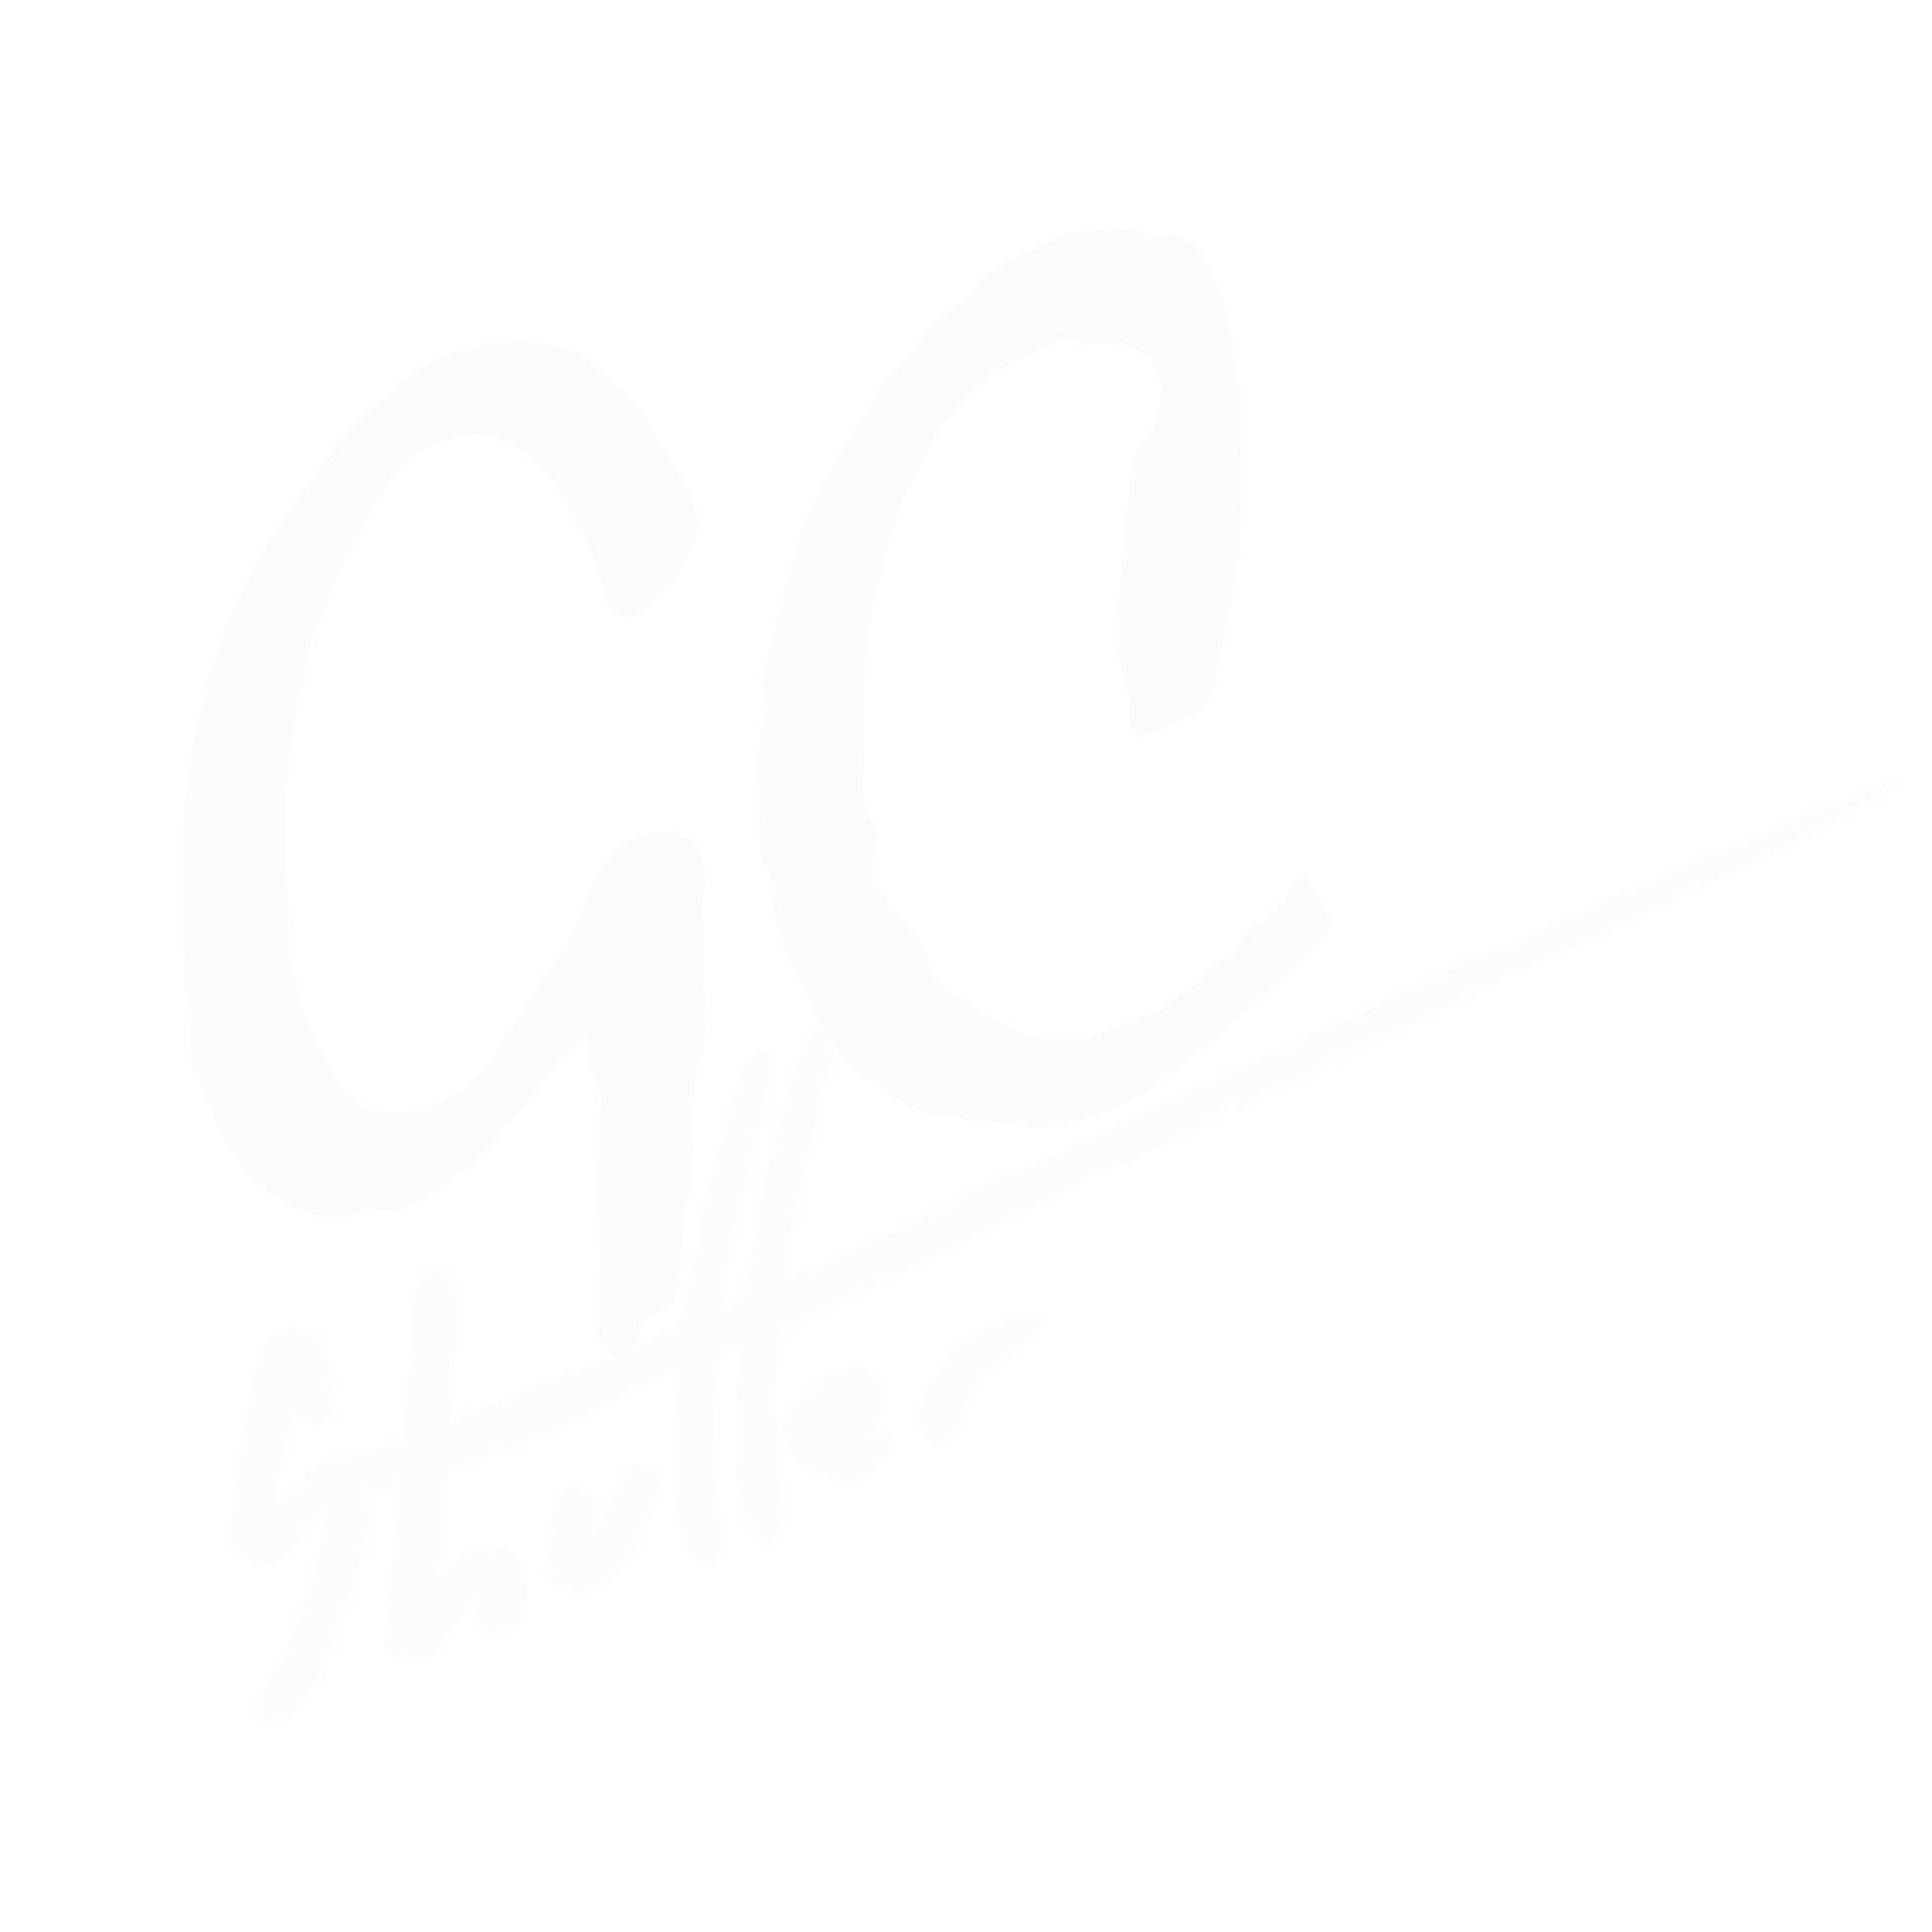 GCShutter.com